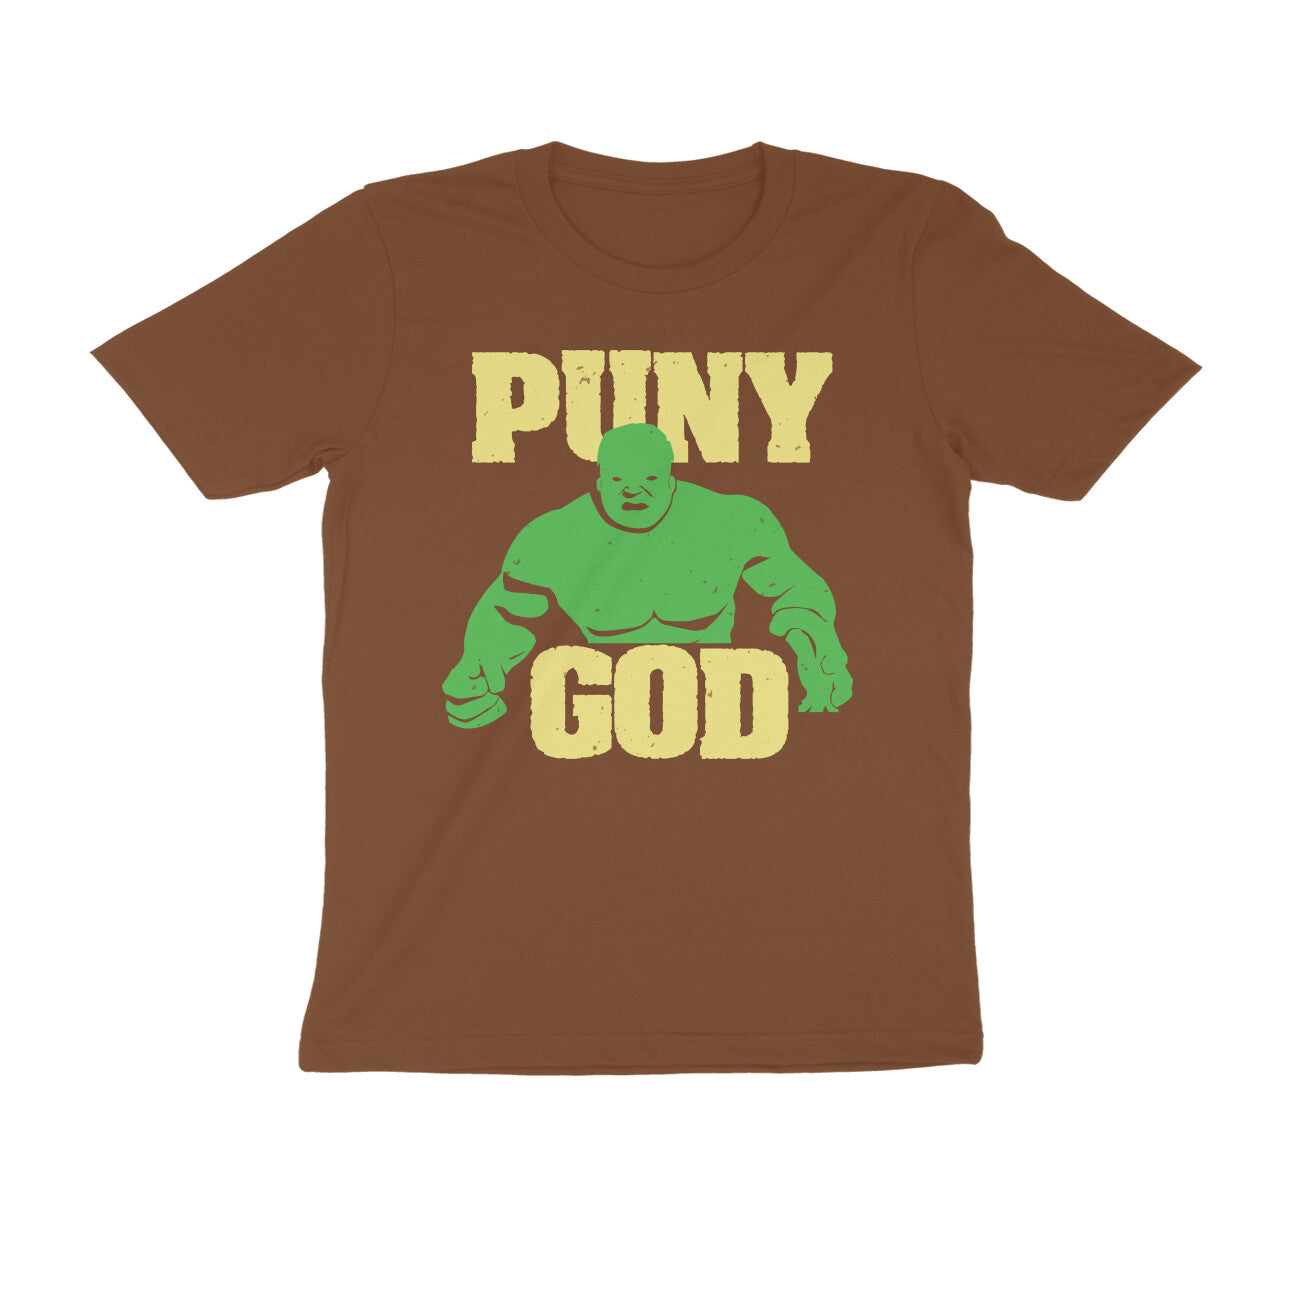 TNH - Men's Round Neck Tshirt - Puny God